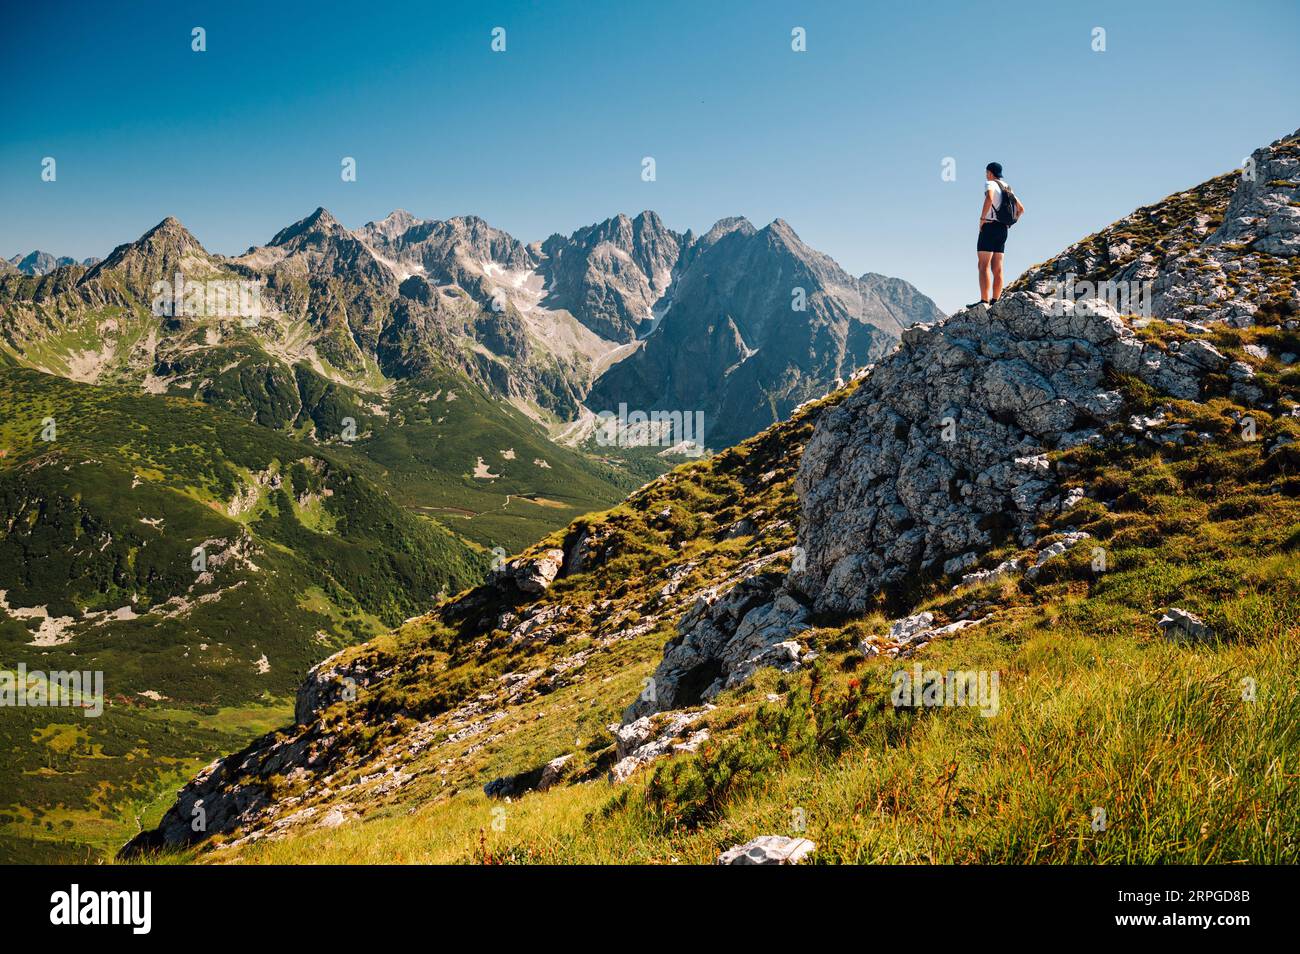 Ein jugendlicher Entdecker taucht in die unberührte Landschaft der Belianske Tatra ein, wobei die ikonische hohe Tatra den Horizont in der Ferne ziert Stockfoto